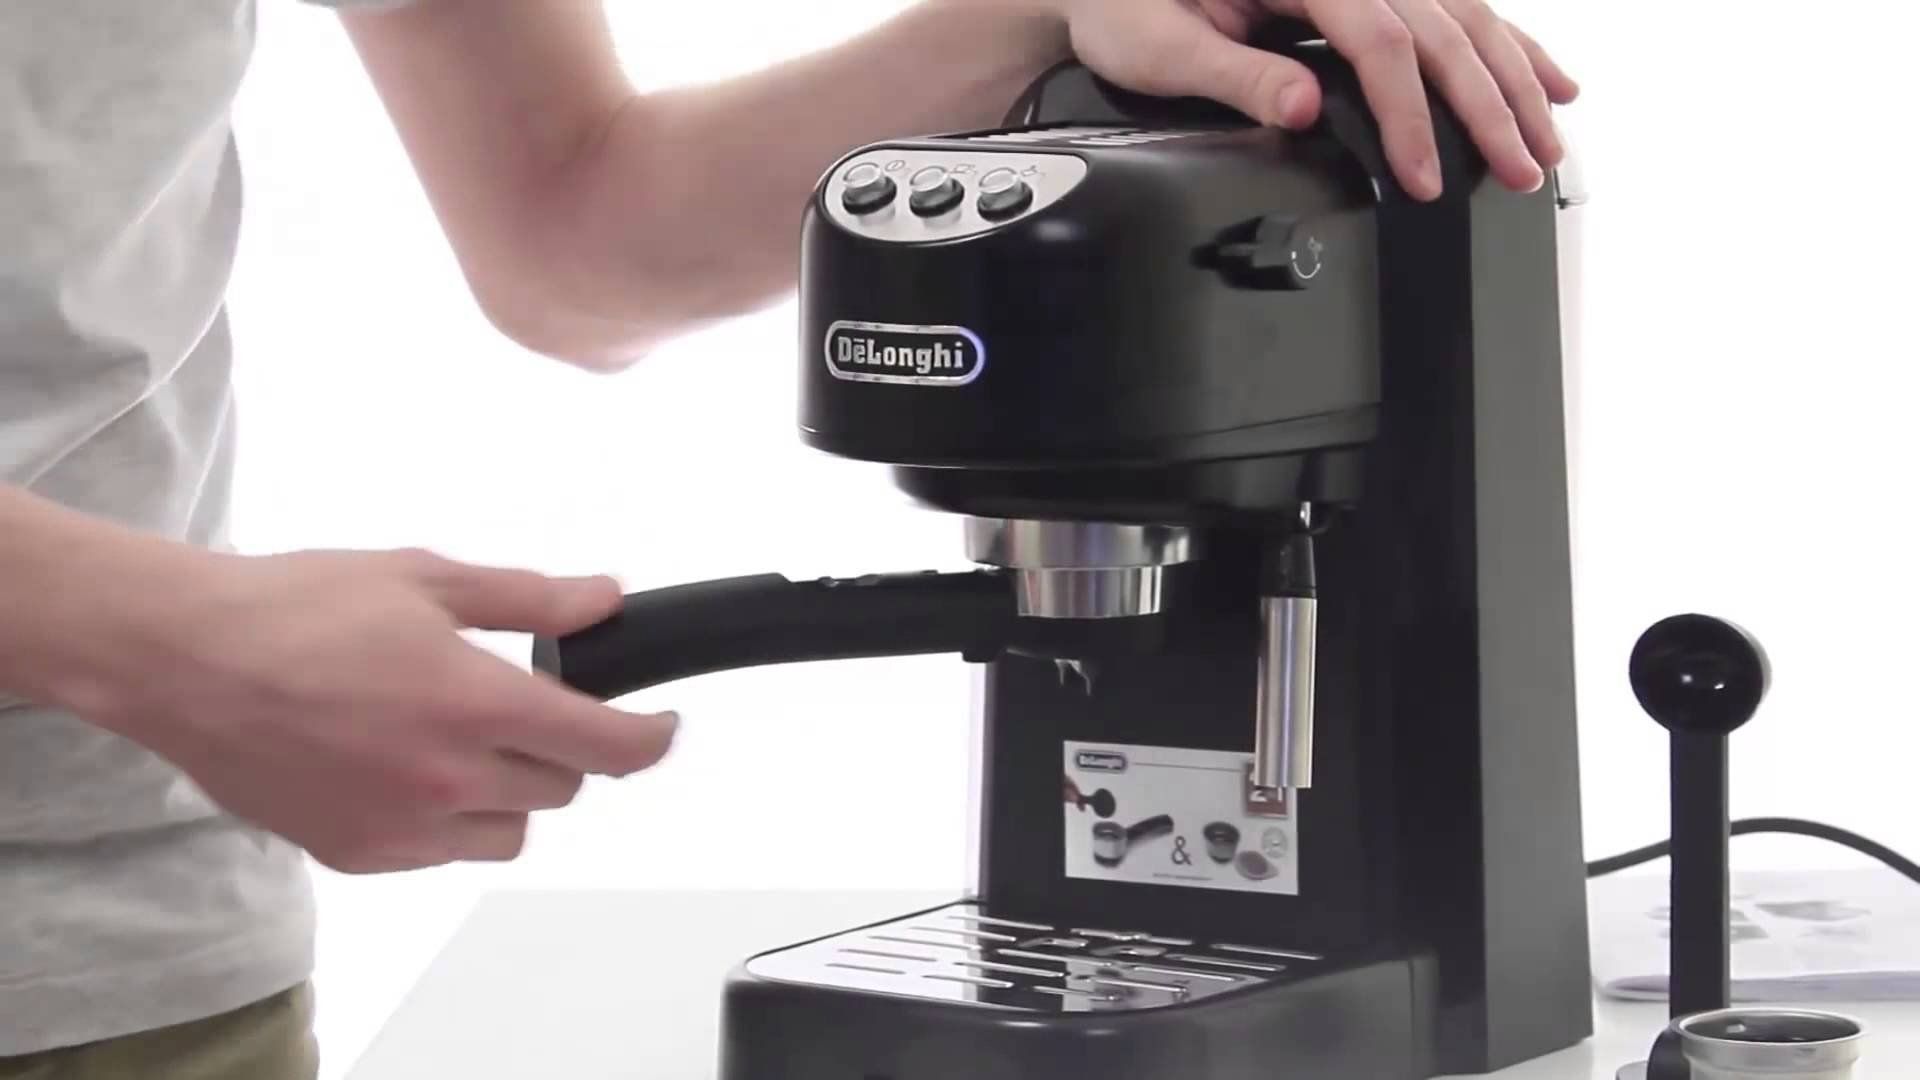 מכונות הקפה הטובות ביותר של De'Longhi לבית ולמשרד בשנת 2020